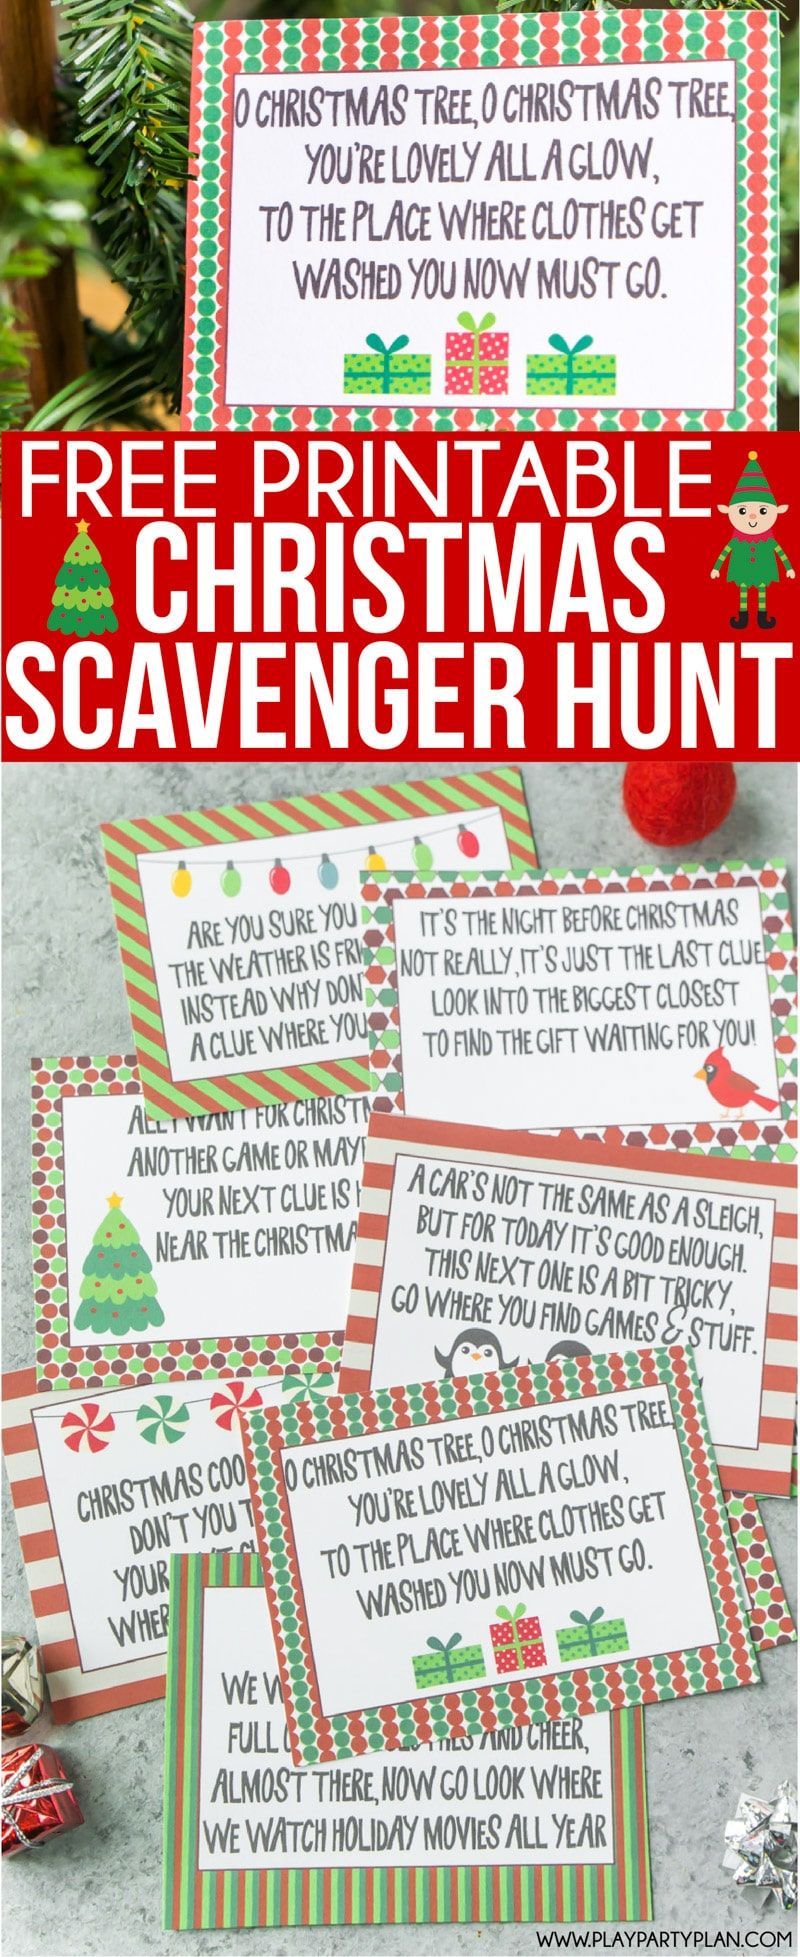 Zdarma tisknutelné stopy pro vánoční lovce pro děti nebo dospívající! Zábavný způsob, jak přimět děti, aby o Vánocích ráno hledaly dárky! Jednoduše si vytiskněte hádanky a můžete vyrazit! A bonus - několik zábavných vánočních loveckých nápadů i pro dospělé!